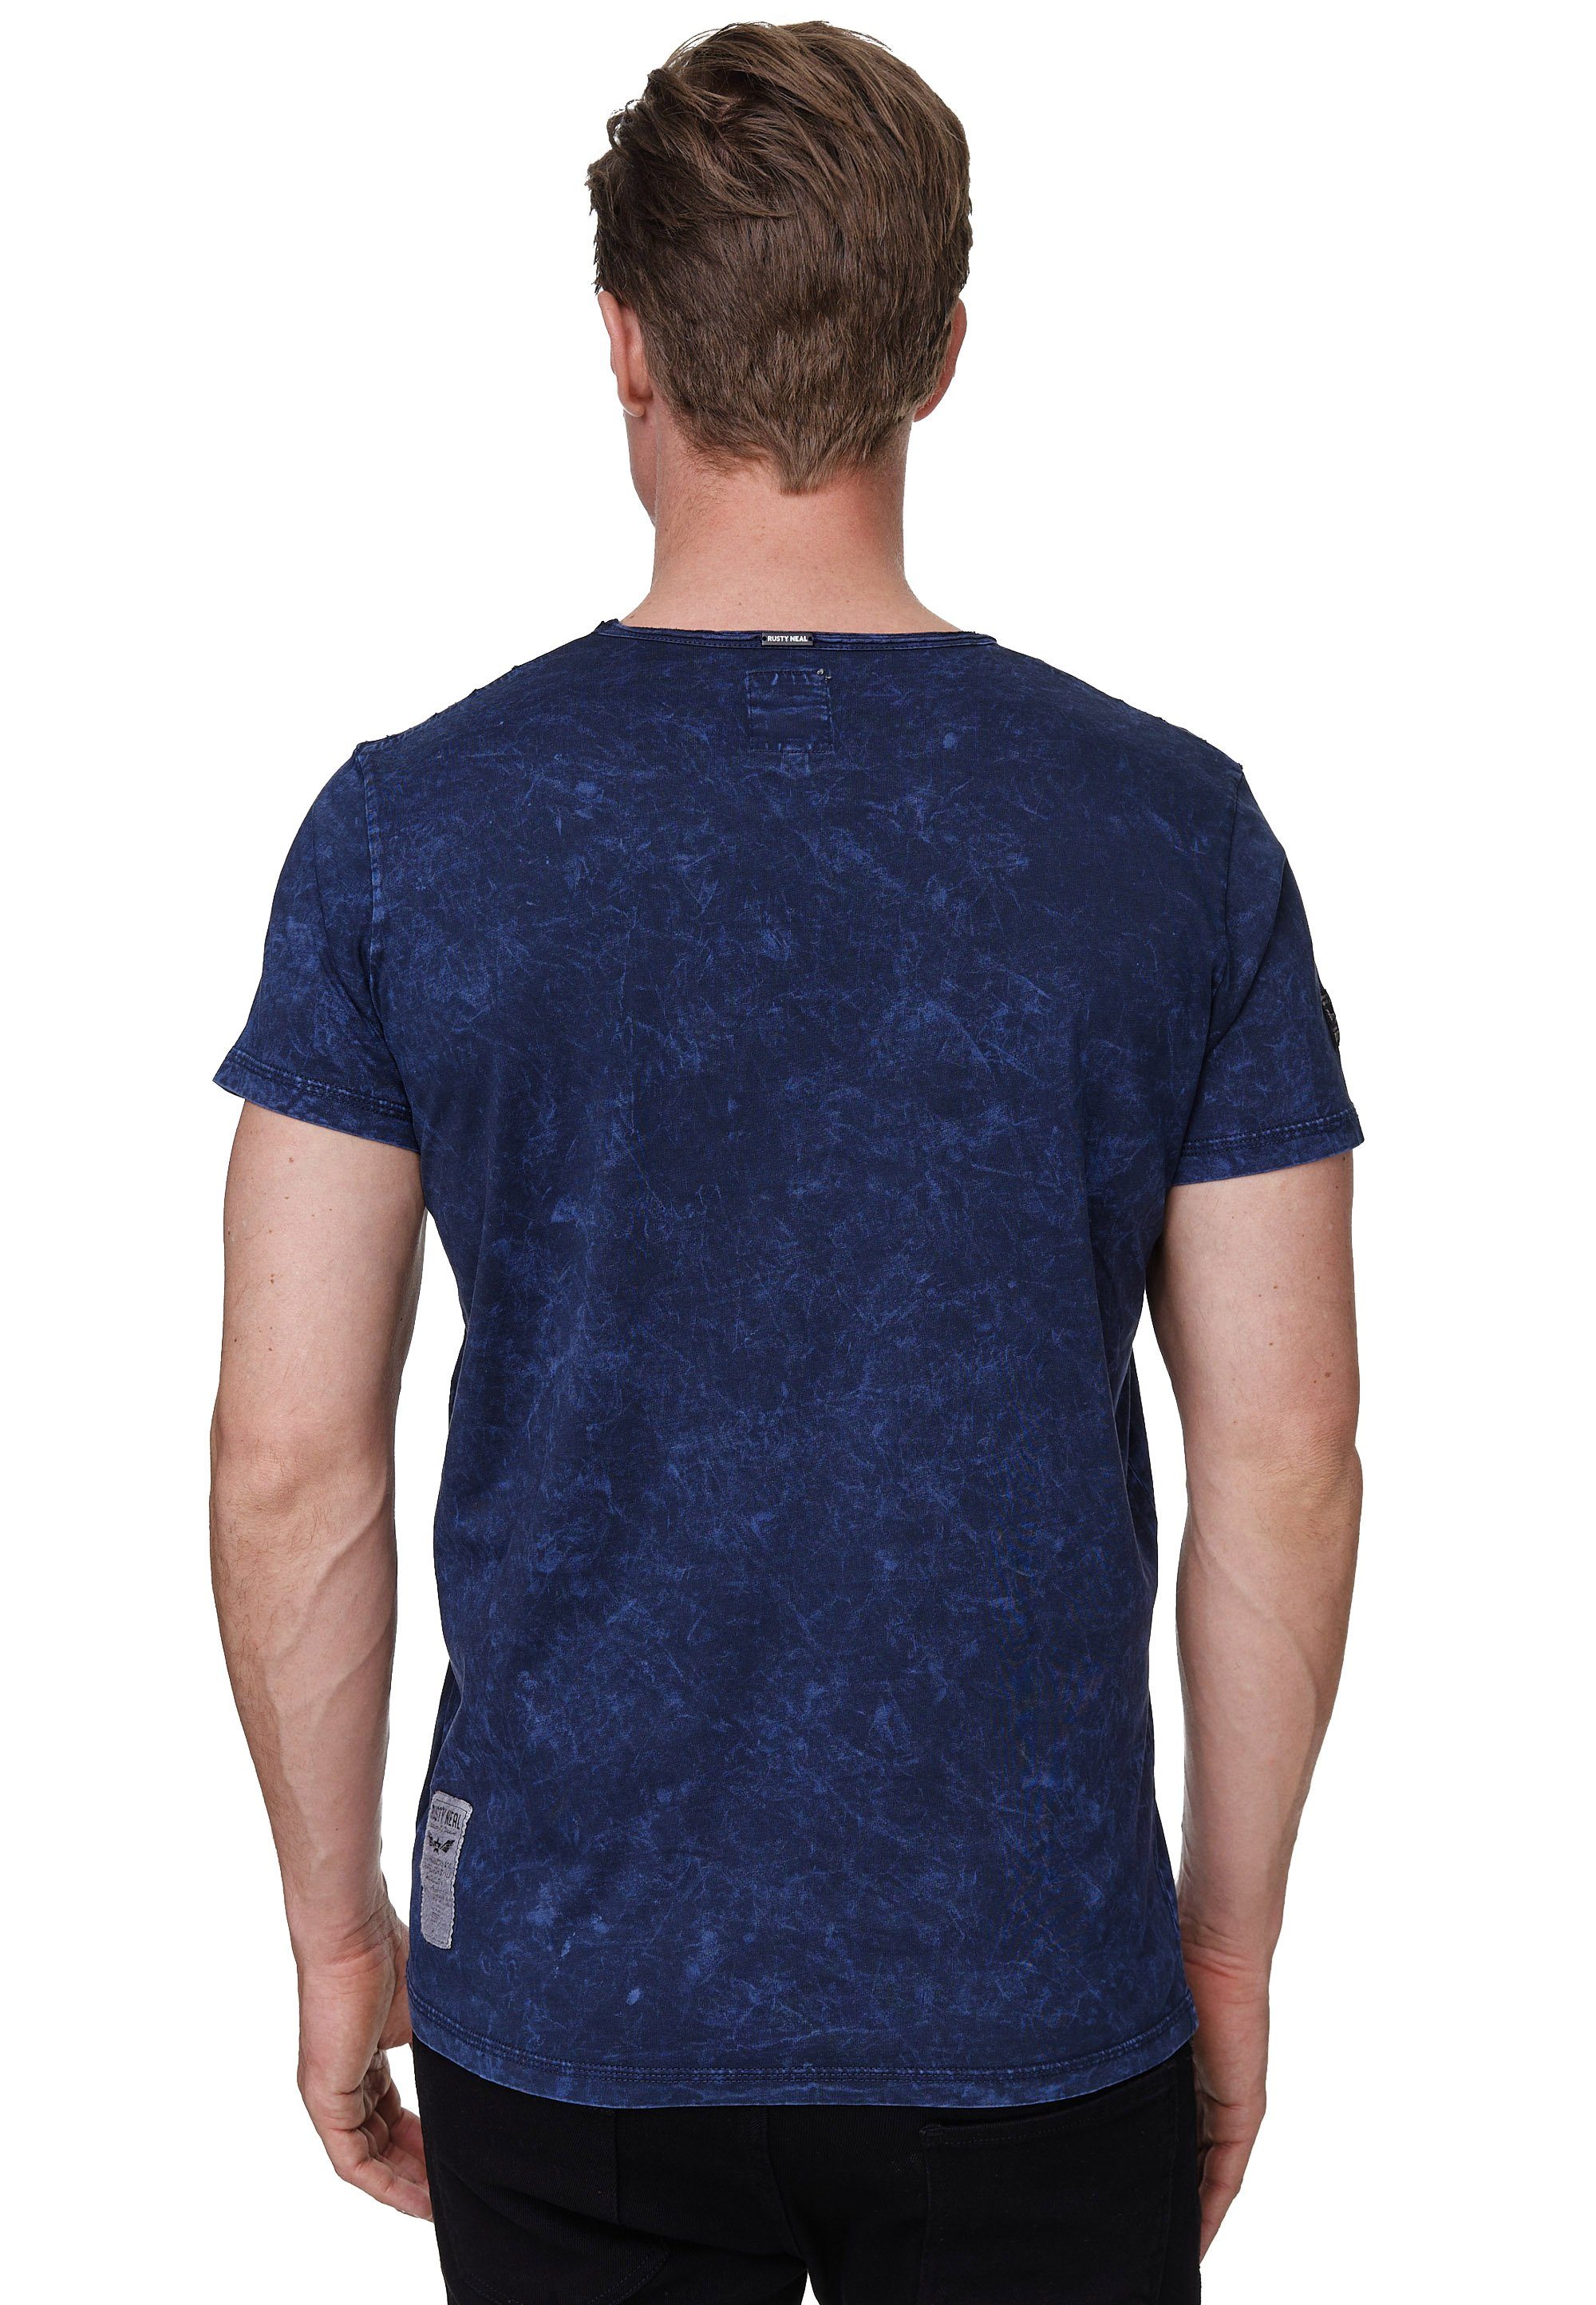 Rusty Neal T-Shirt mit und dunkelblau Brusttasche toller Musterung